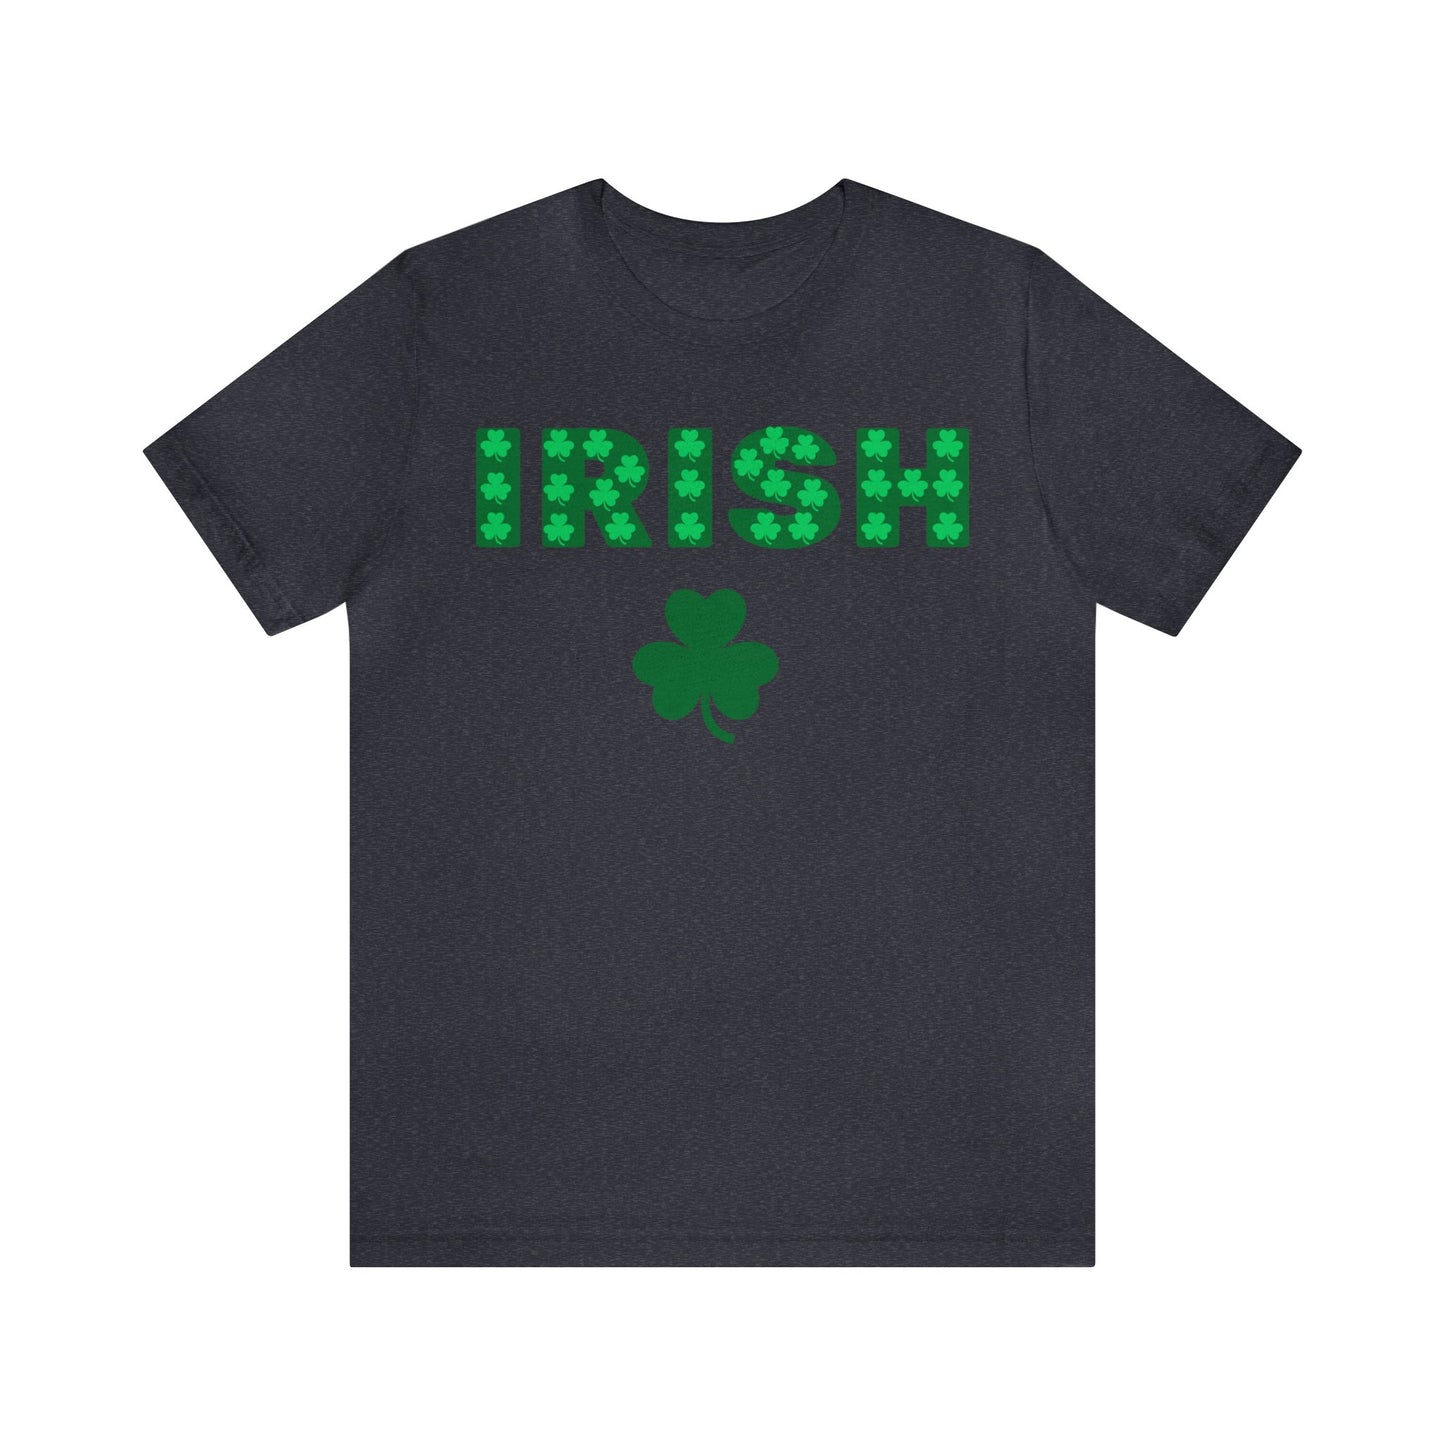 Irish shirt Feeling Lucky Shirt Clover Shirt St Patrick's Day shirt